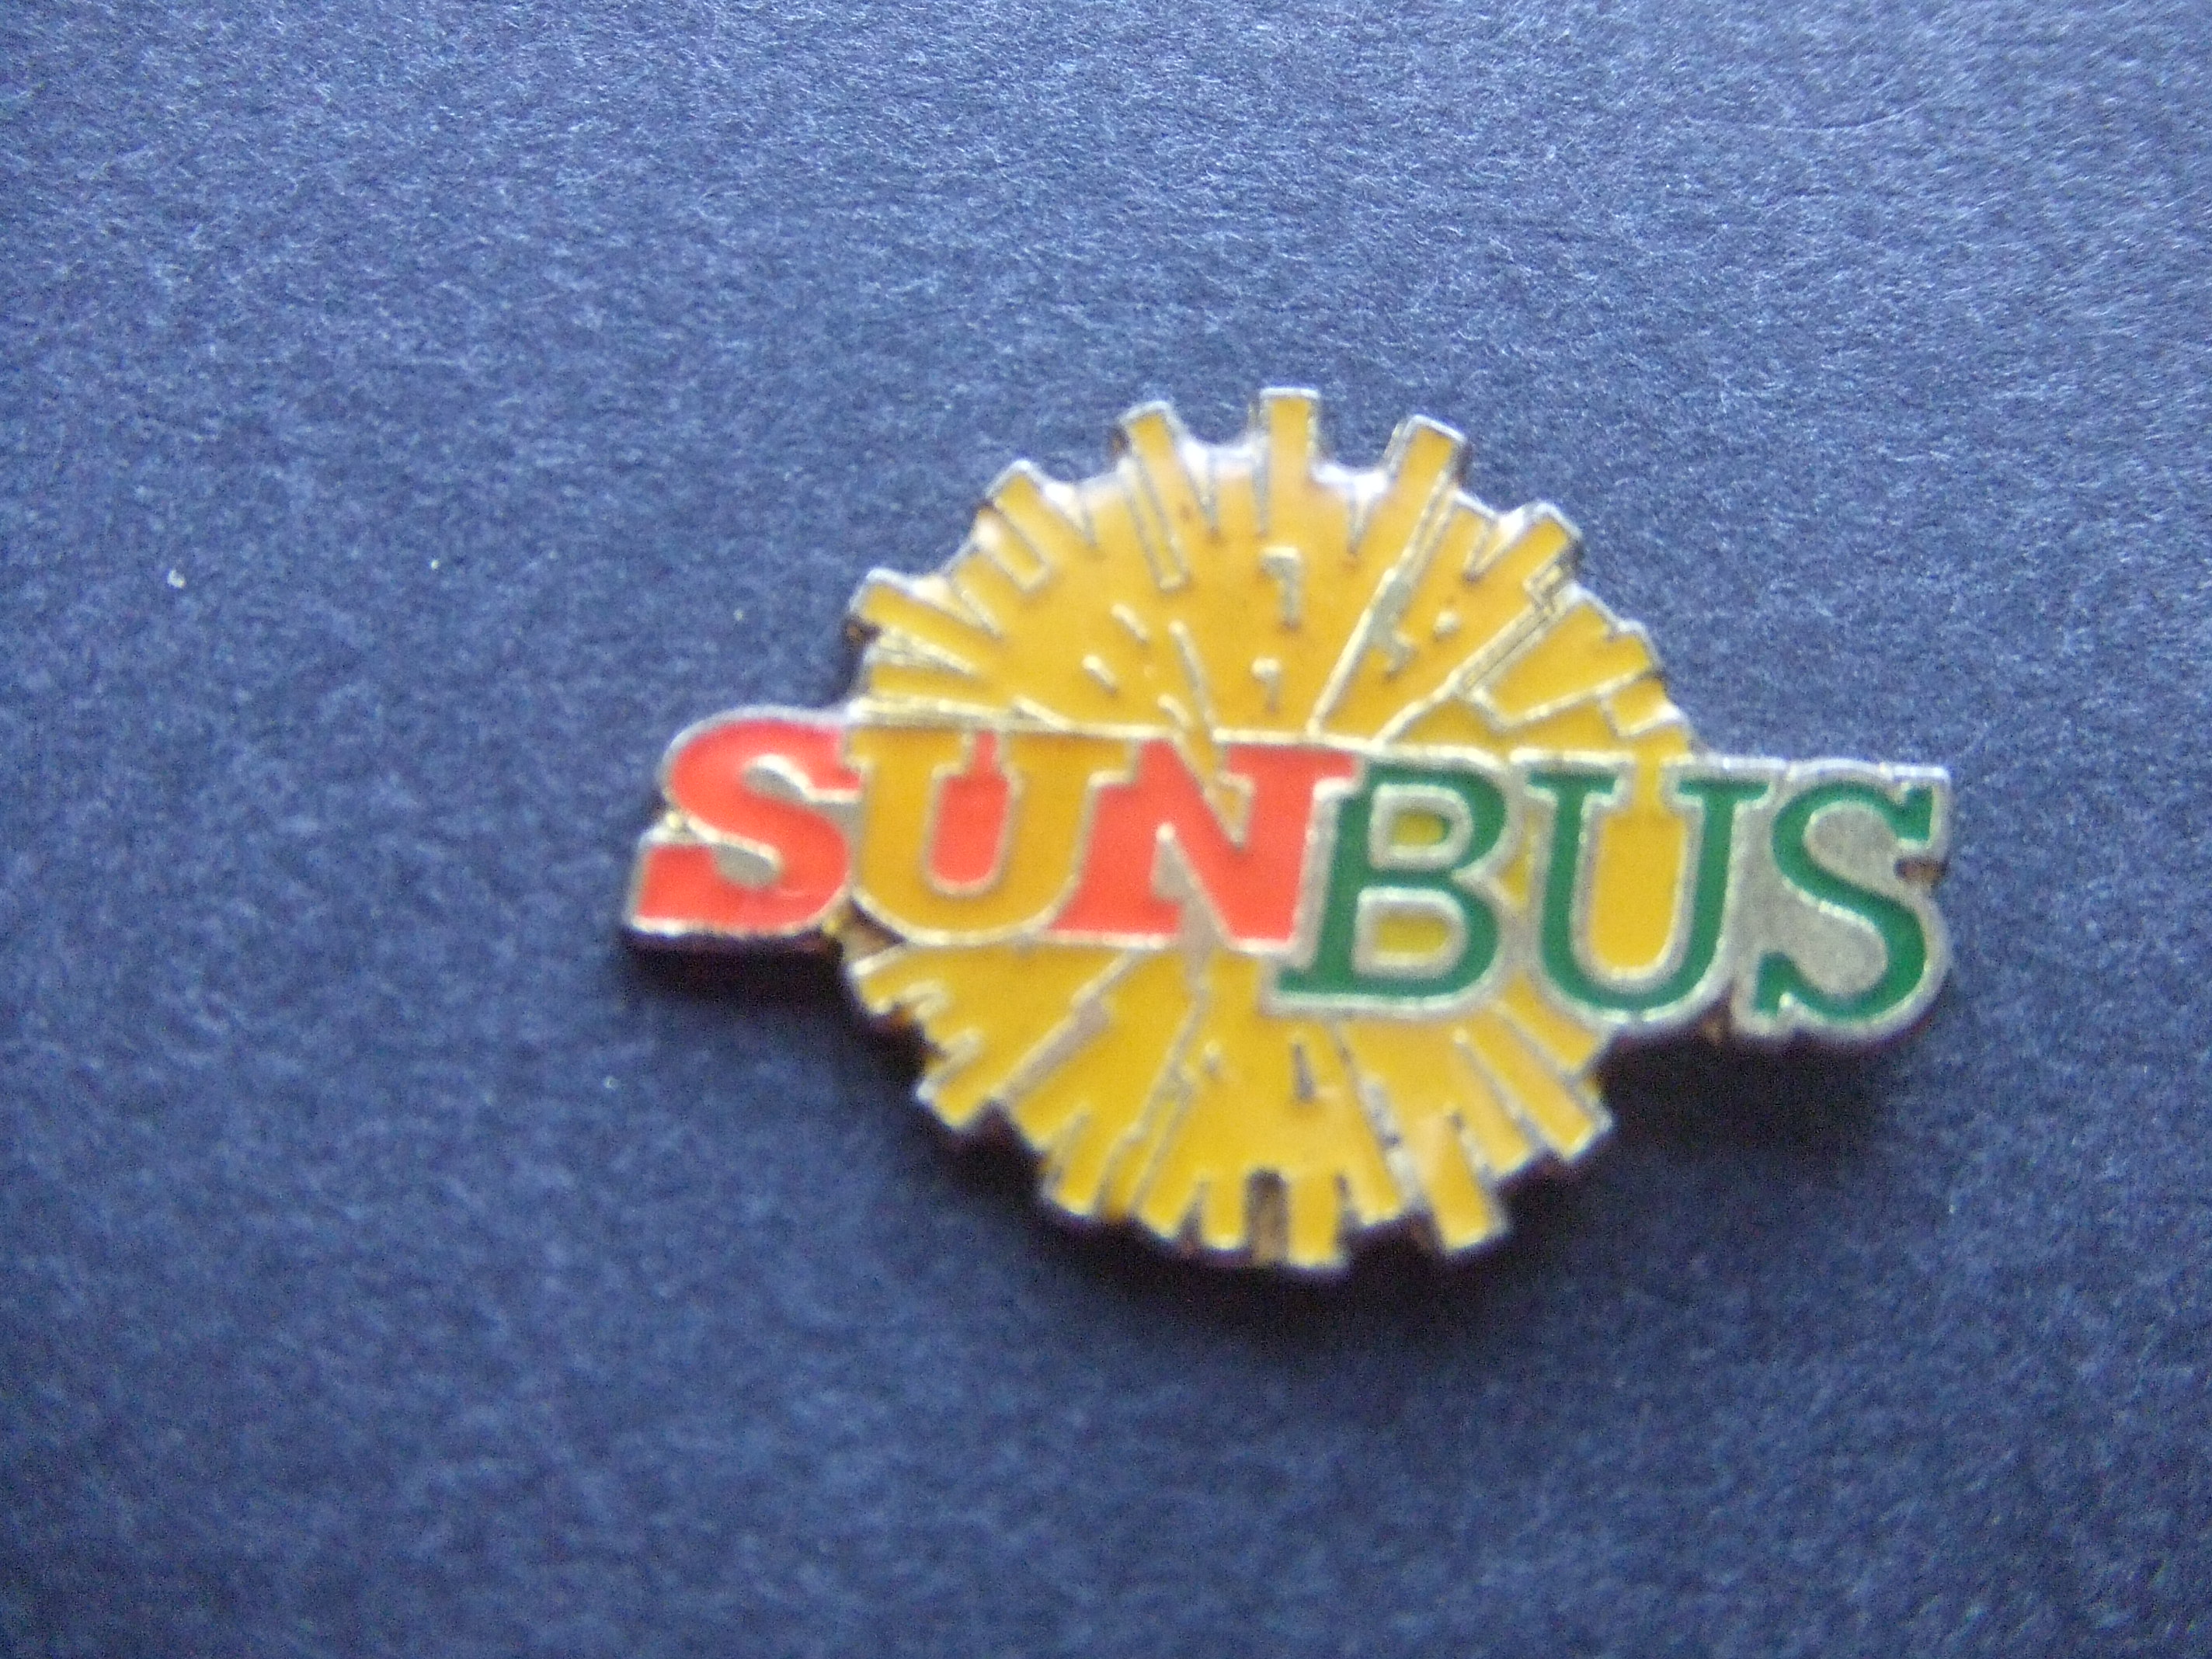 Sunbus Melbourne luchthaven transfer diensten